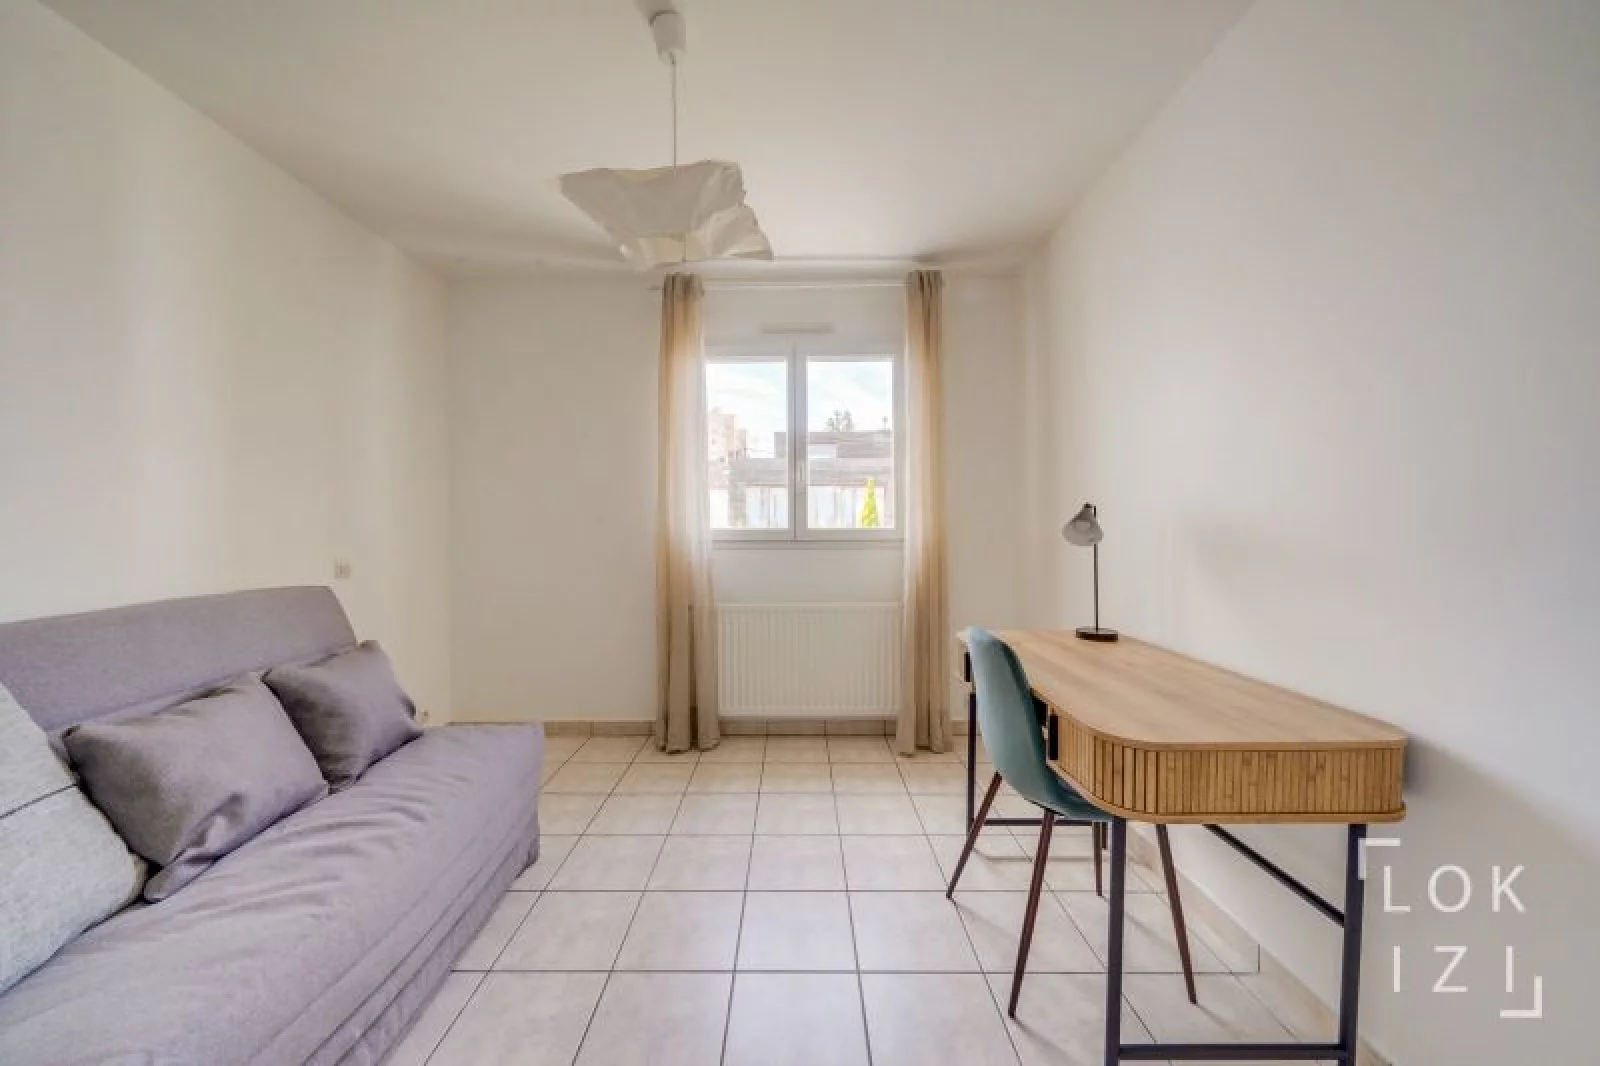 Location maison meublée 5 pièces 110m² (Bordeaux - Caudéran)